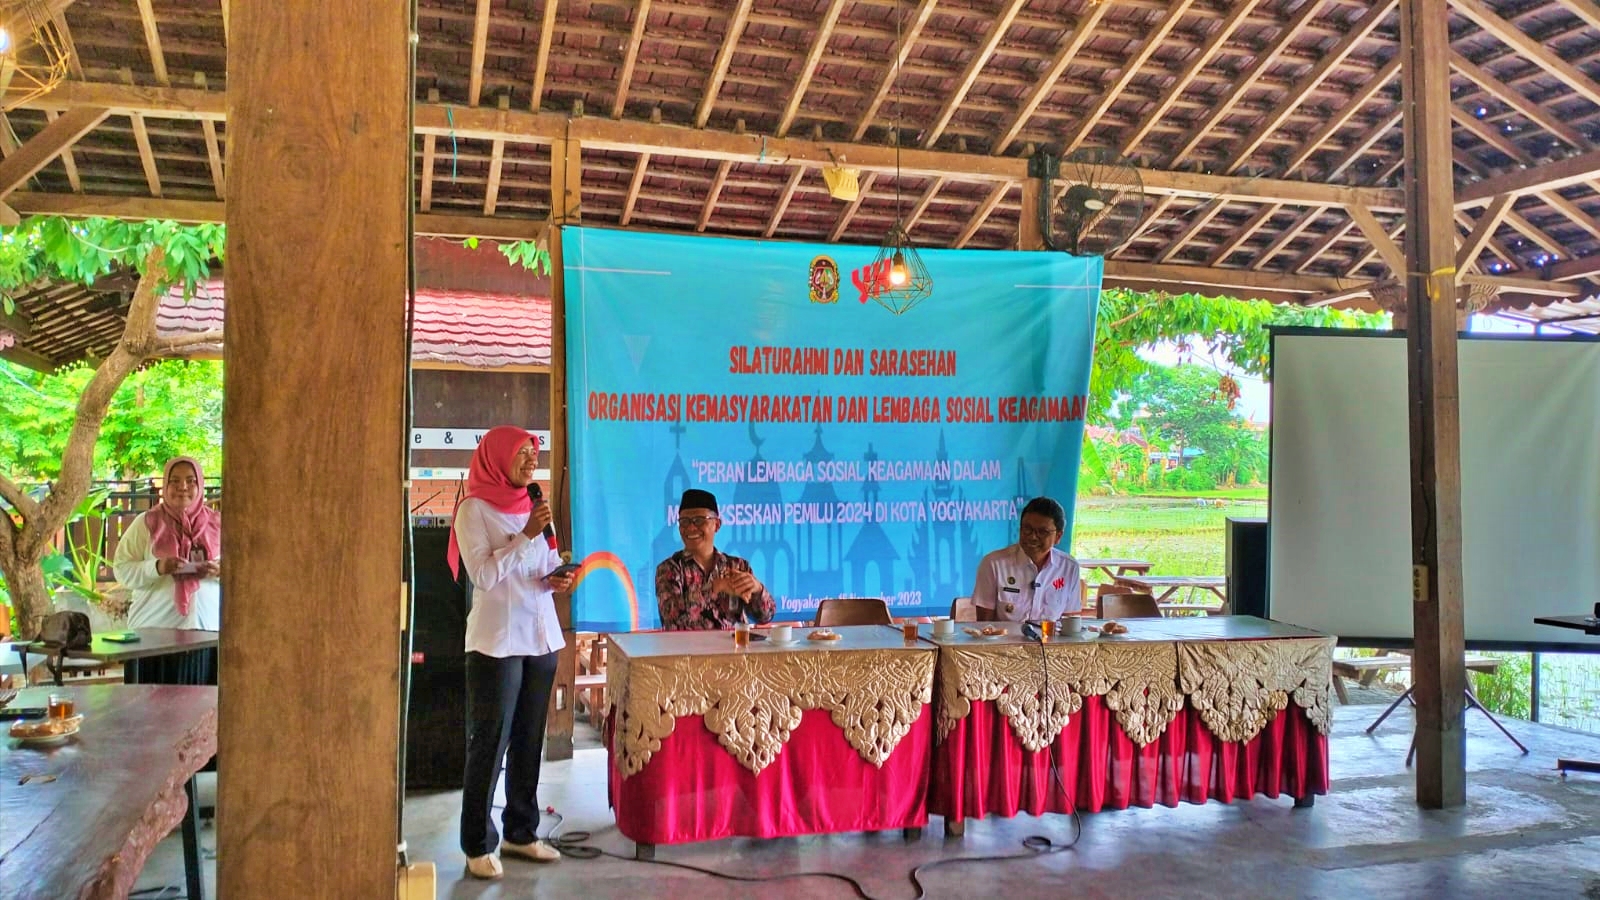 Peran Lembaga Sosial Keagamaan dalam Menyukseskan Pemilu 2024 di Kota Yogyakarta